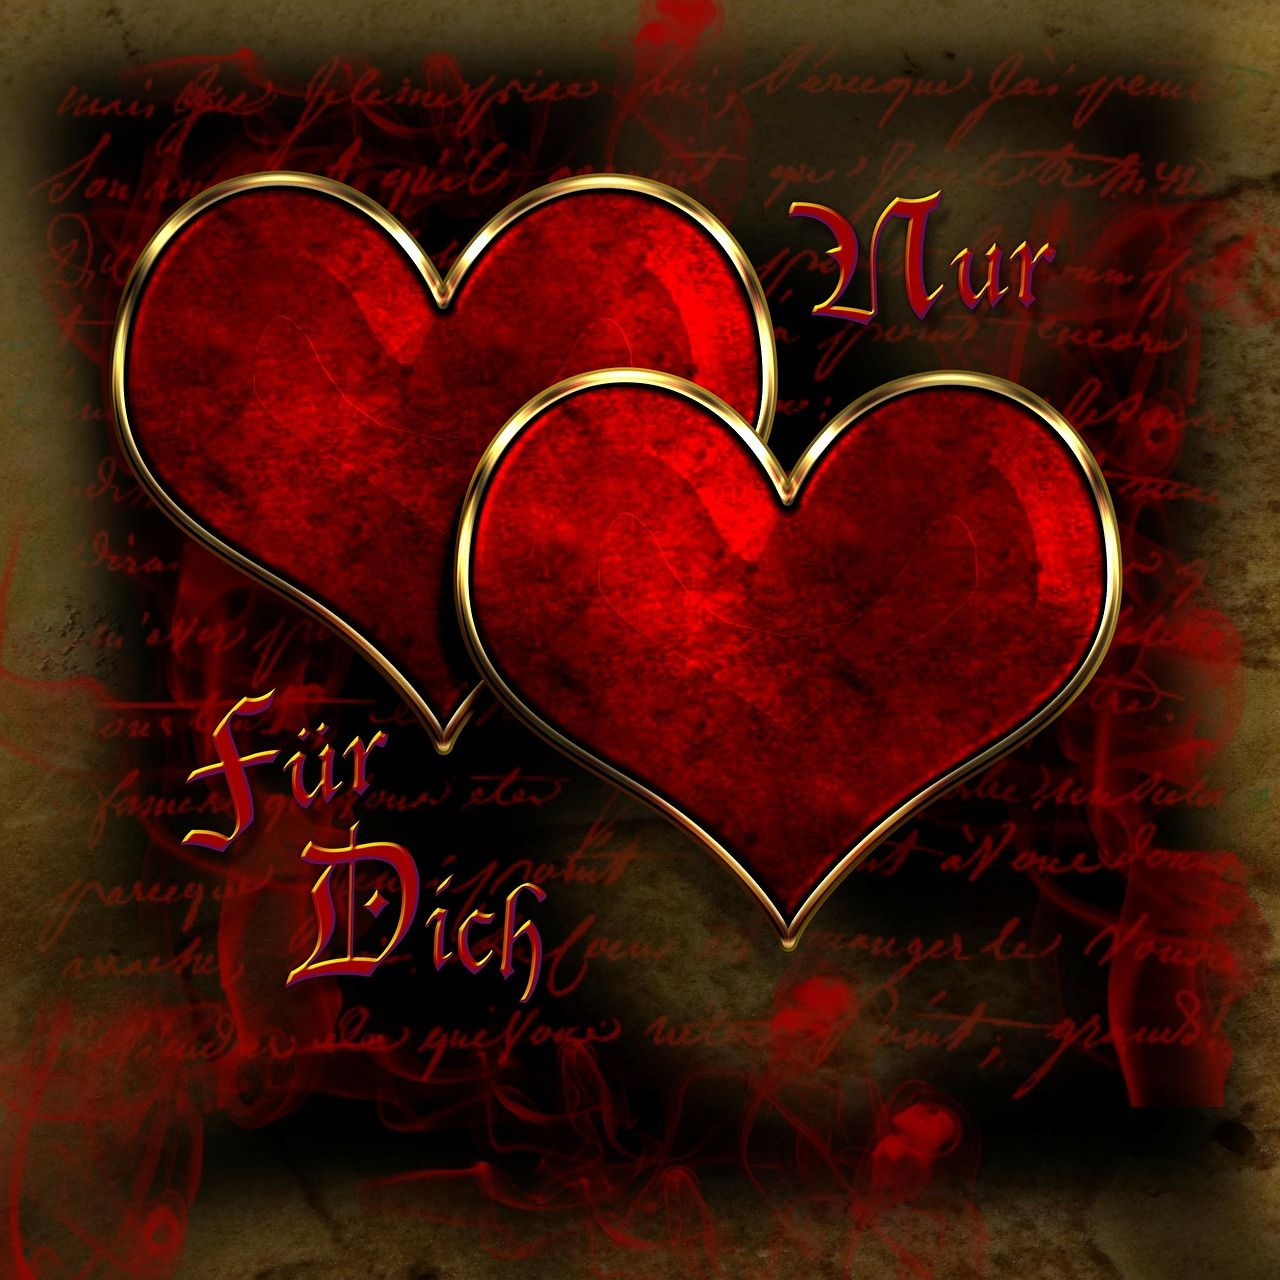 Kostenloses Bild Auf Pixabay - Herzen, Herz, Liebe, Gruß bestimmt für Liebesbilder Mit Herzen